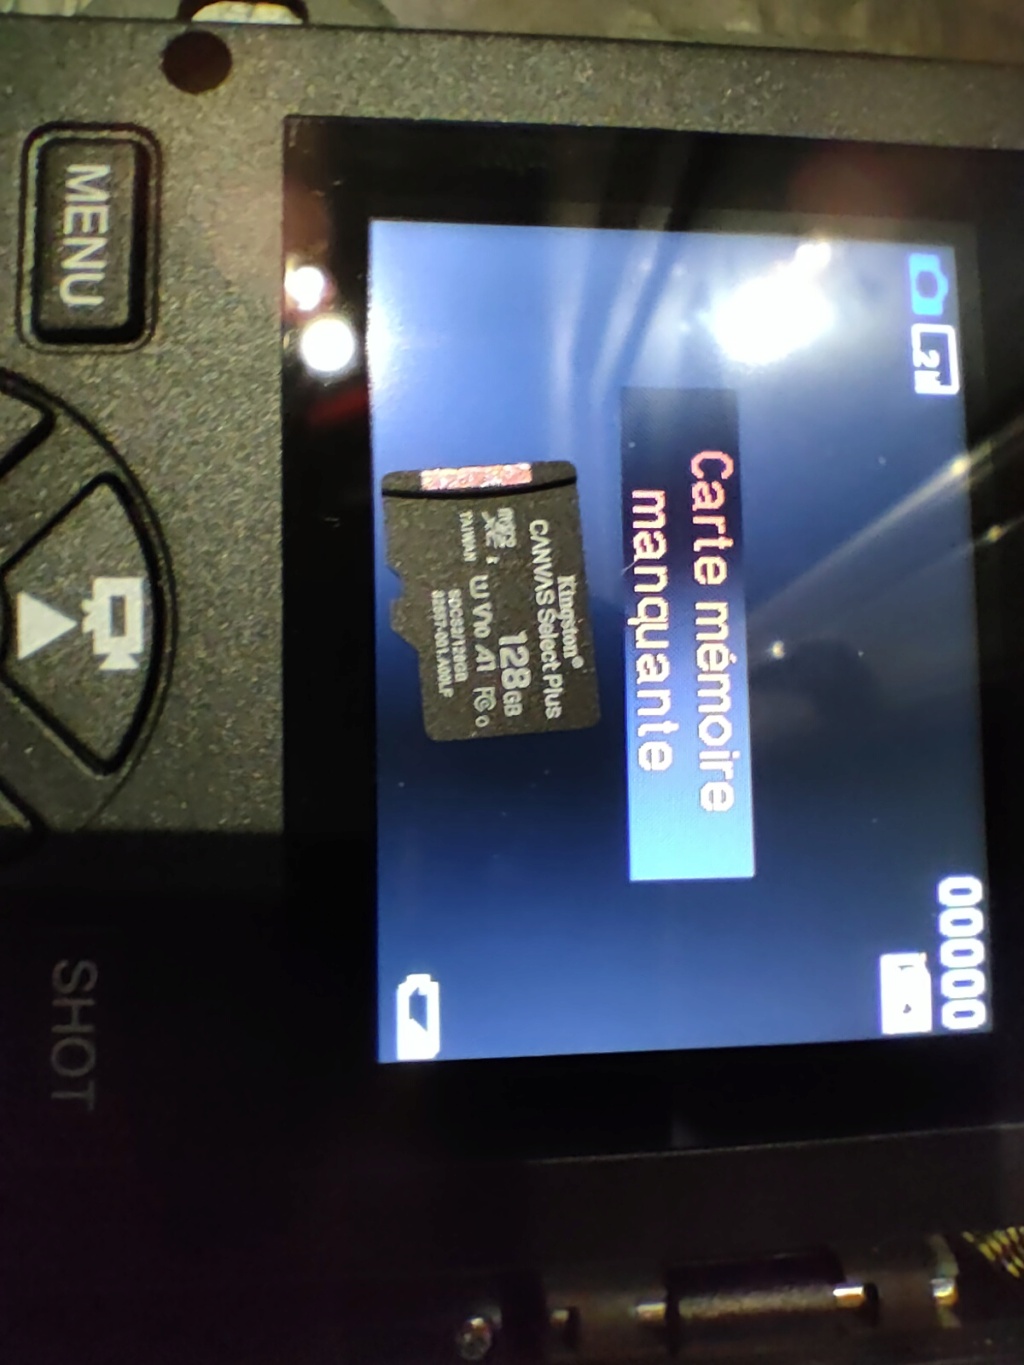 Échangé (plus disponible) : Caméra Digitale CoolLife H8201 (double objectif : vision nocturne N/B et  journée couleur) neuve jamais utilisée en extérieur. Vendue avec carte SD 128Go + chargeur de piles et 8 piles rechargeables contre une CB JFK + alim Img20187